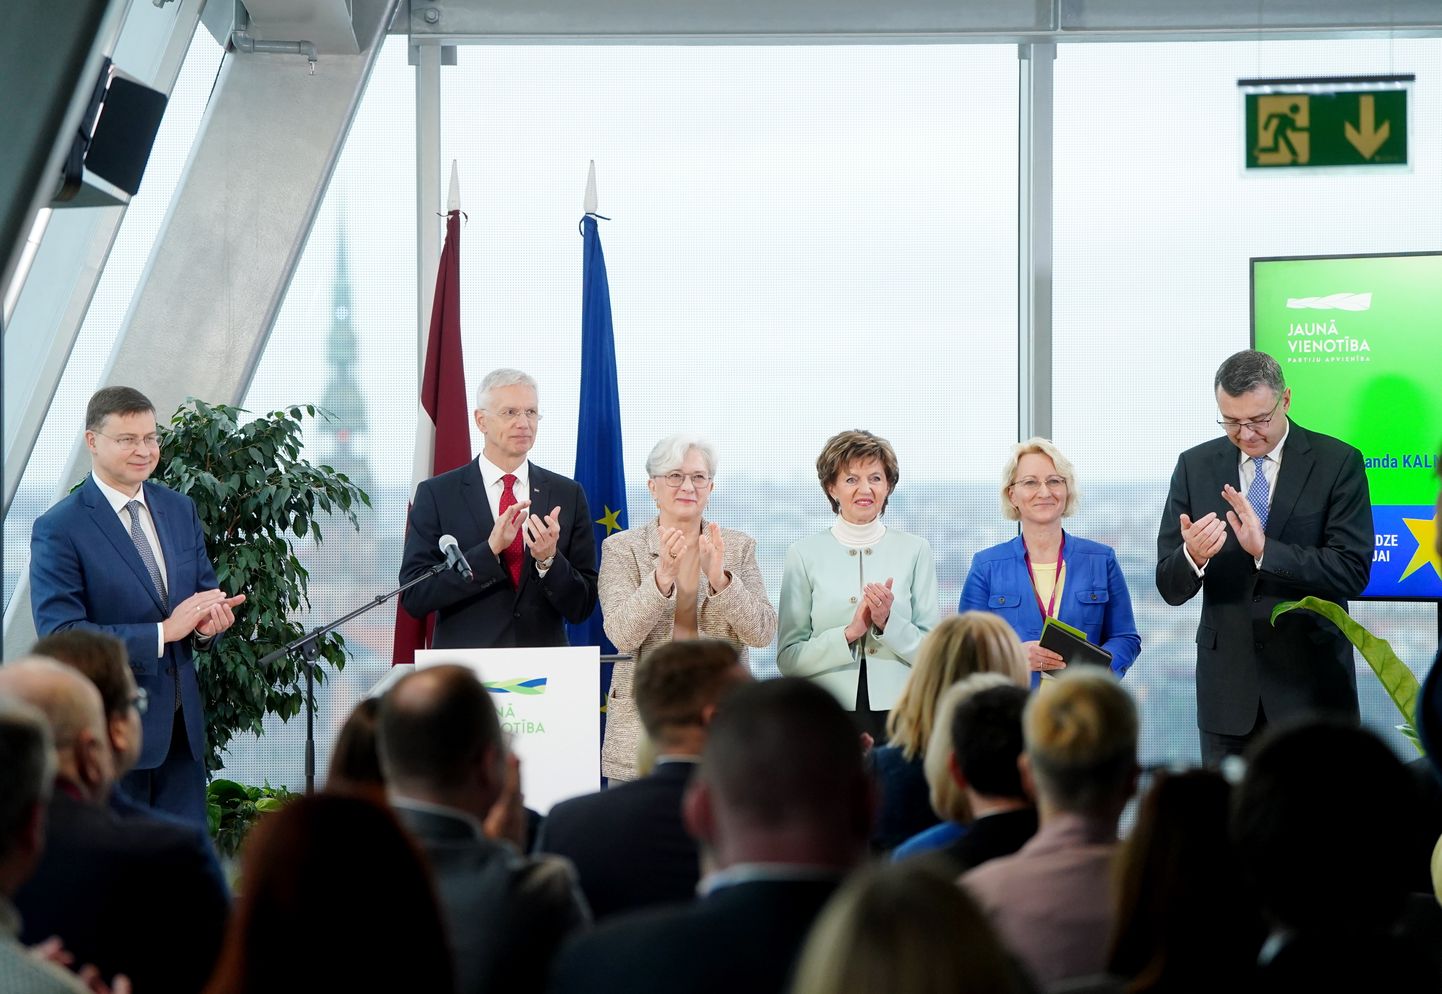 Partiju apvienības "Jaunā Vienotība" Eiropas Parlamenta vēlēšanu saraksta līderi- Eiropas Komisijas priekšsēdētājas izpildvietnieks Valdis Dombrovskis (no kreisās), partijas 'Vienotība" valdes loceklis un Apvienības "Jaunā Vienotība" priekšsēdētājs, ārlietu ministrs Krišjānis Kariņš un Eiropas Parlamenta deputātes Sandra Kalniete, Inese Vaidere, Dace Melbārde un partijas 'Vienotība" valdes loceklis un  Apvienības "Jaunā Vienotība" valdes loceklis, Saeimas deputāts Jānis Reirs piedalās Apvienības "Jaunā Vienotība" un partijas "Vienotība" atklātajā domes sēdē un kopsapulcē, kurā tiek prezentēta apvienības Eiropas Parlamenta vēlēšanu programma un kandidātu saraksti.